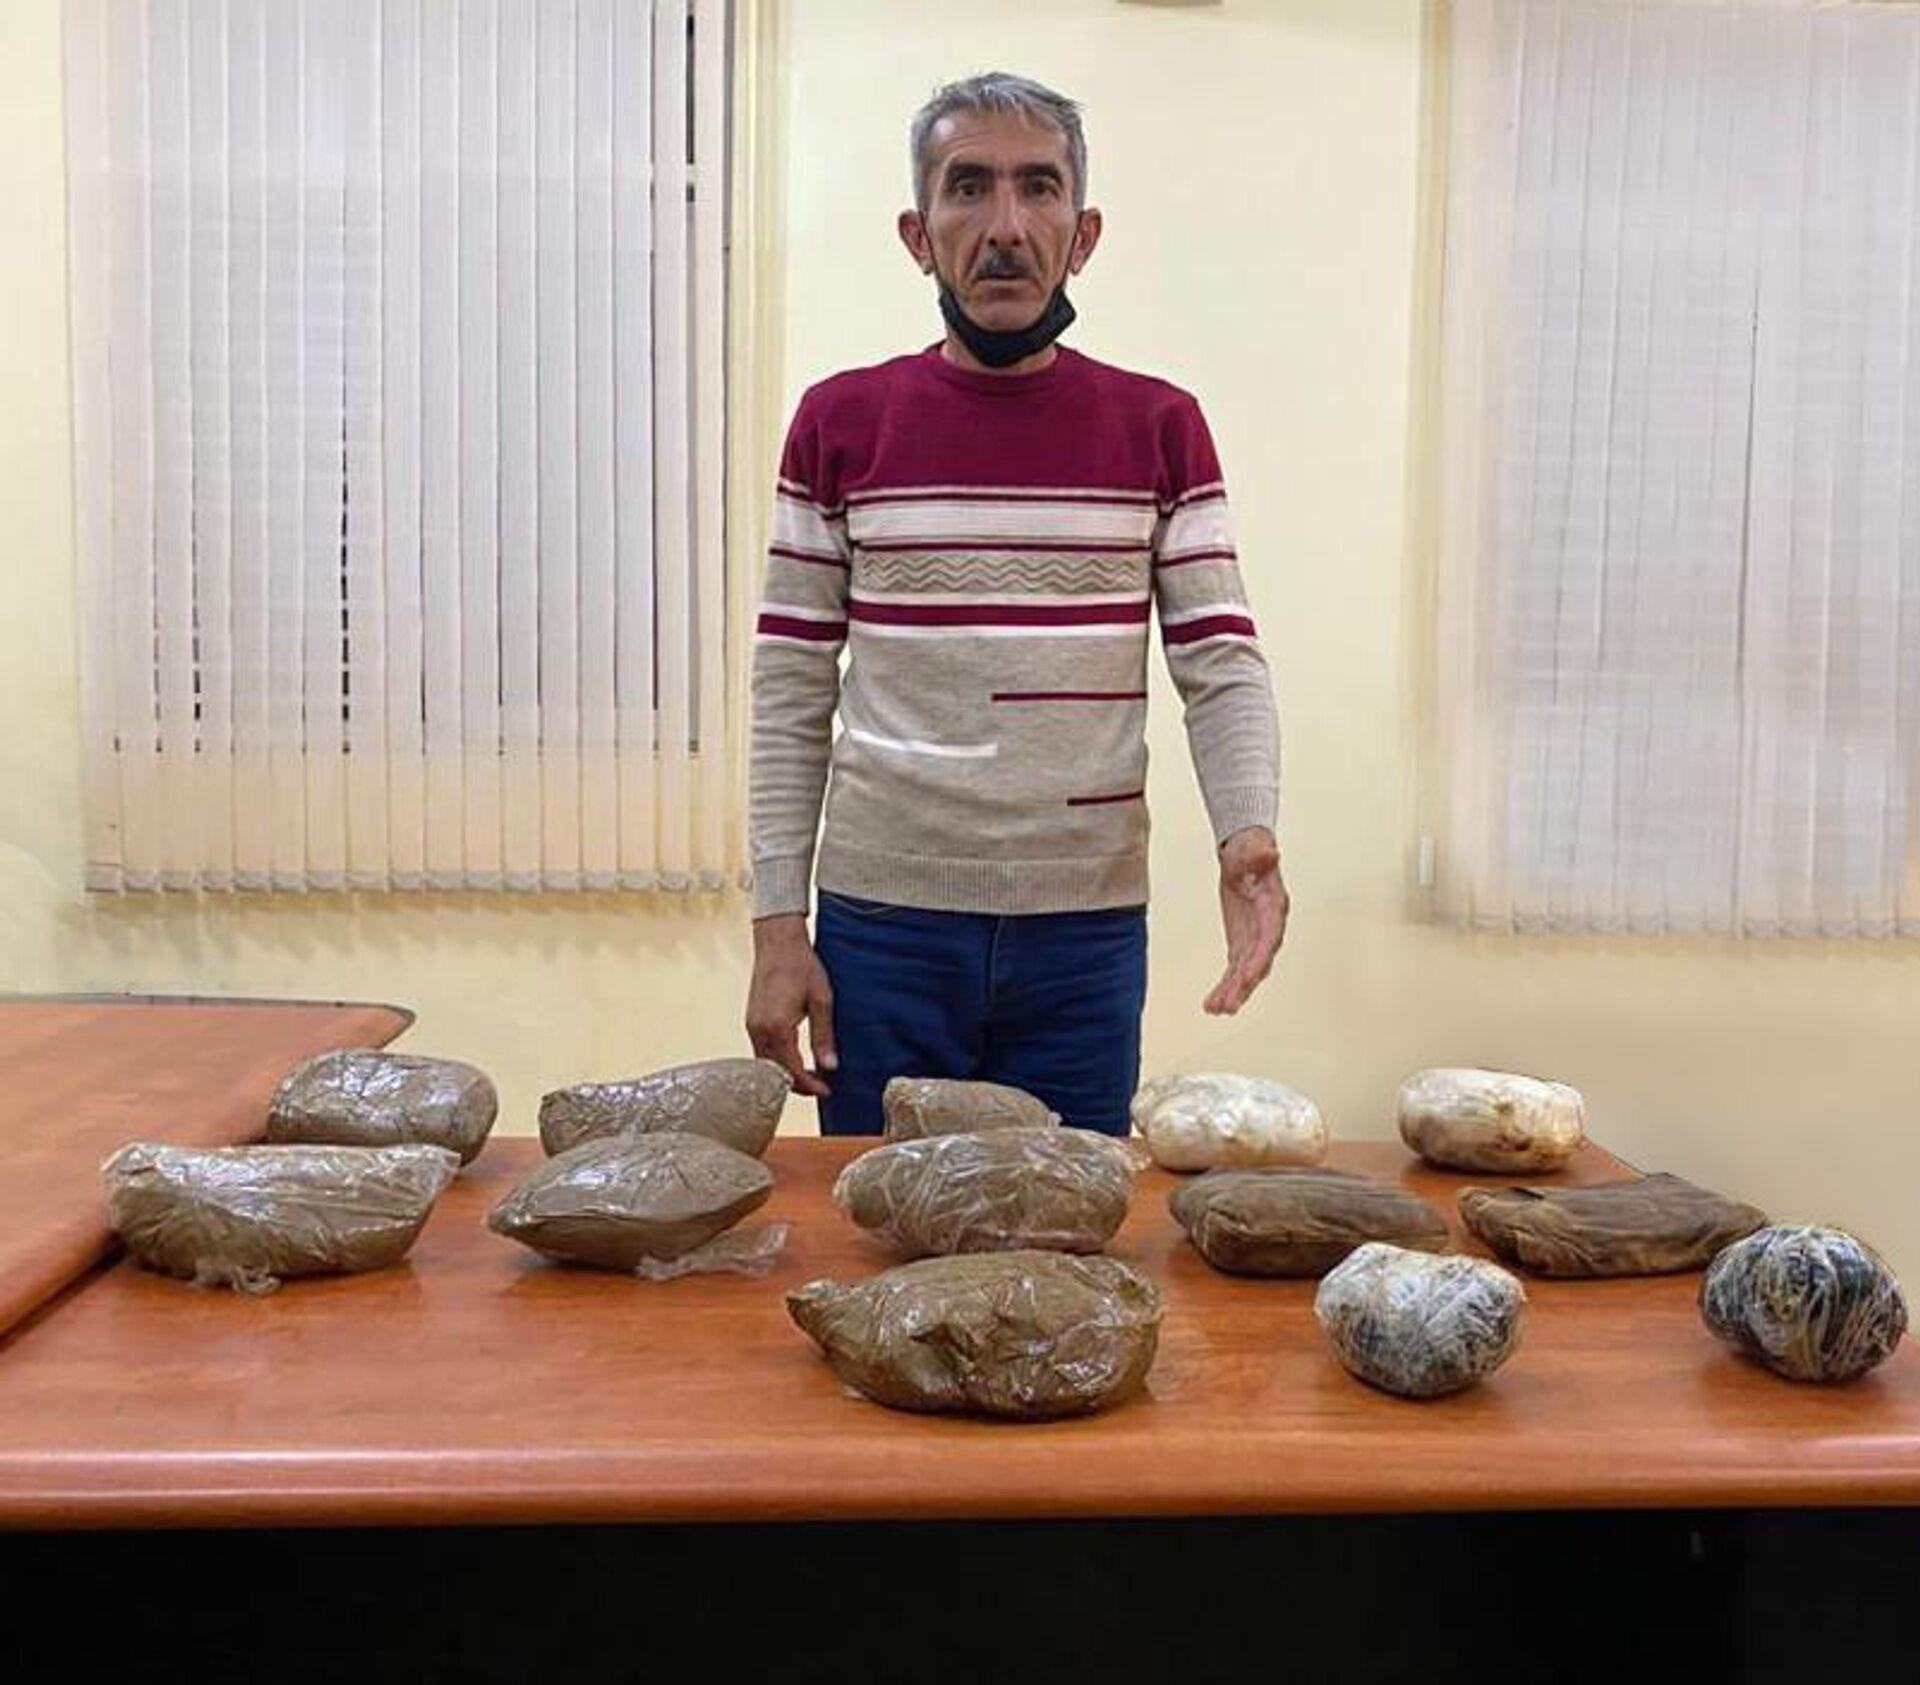 Пограничники с помощью полиции и спецслужб взяли 20 килограммов наркотиков - Sputnik Азербайджан, 1920, 21.05.2021